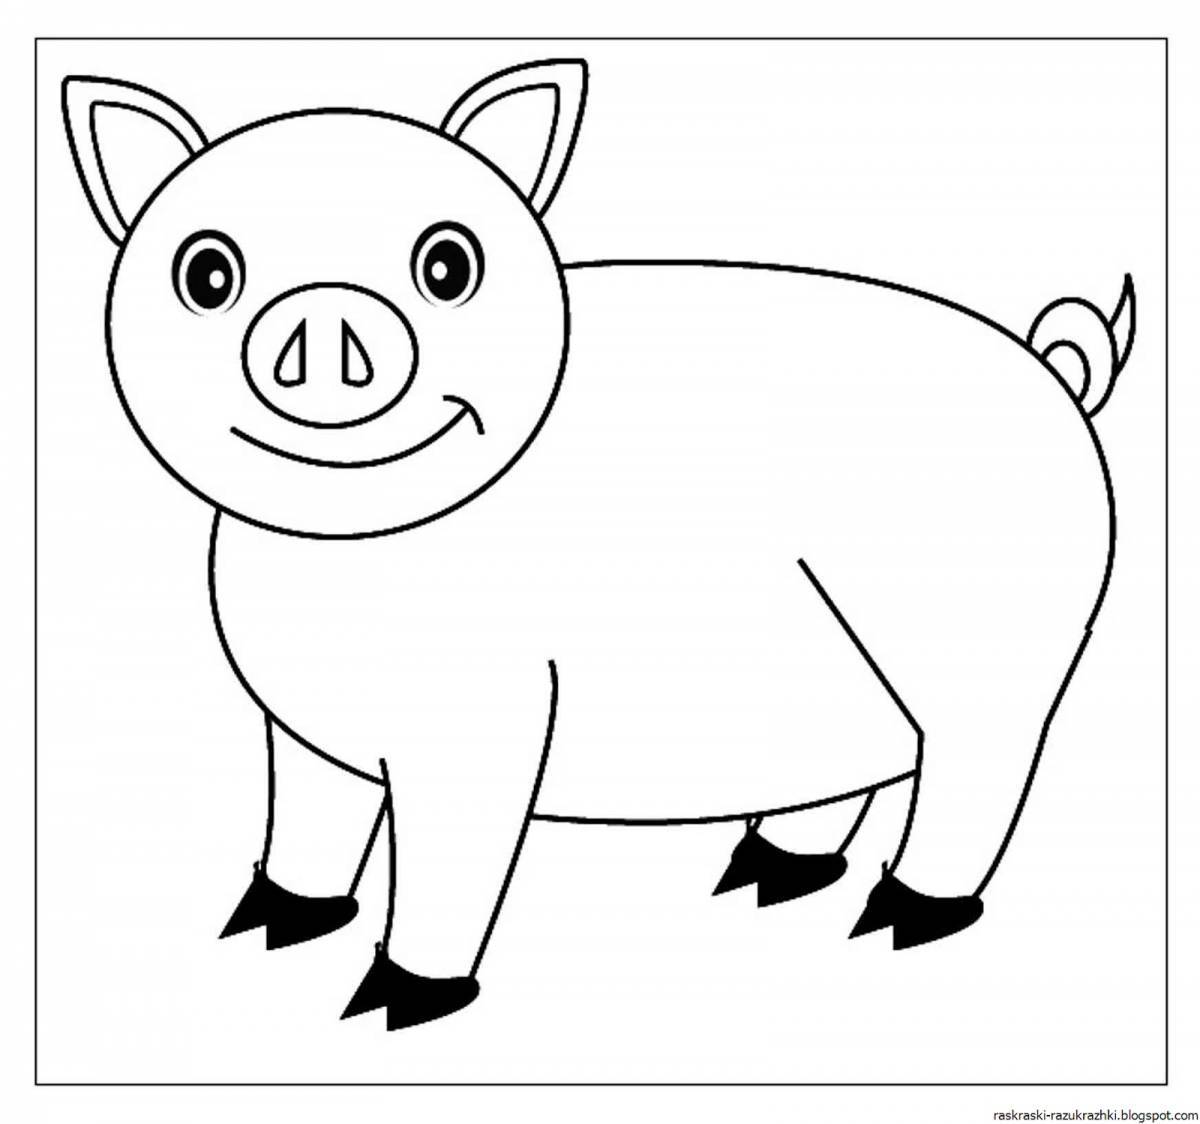 Coloring book smiling pig